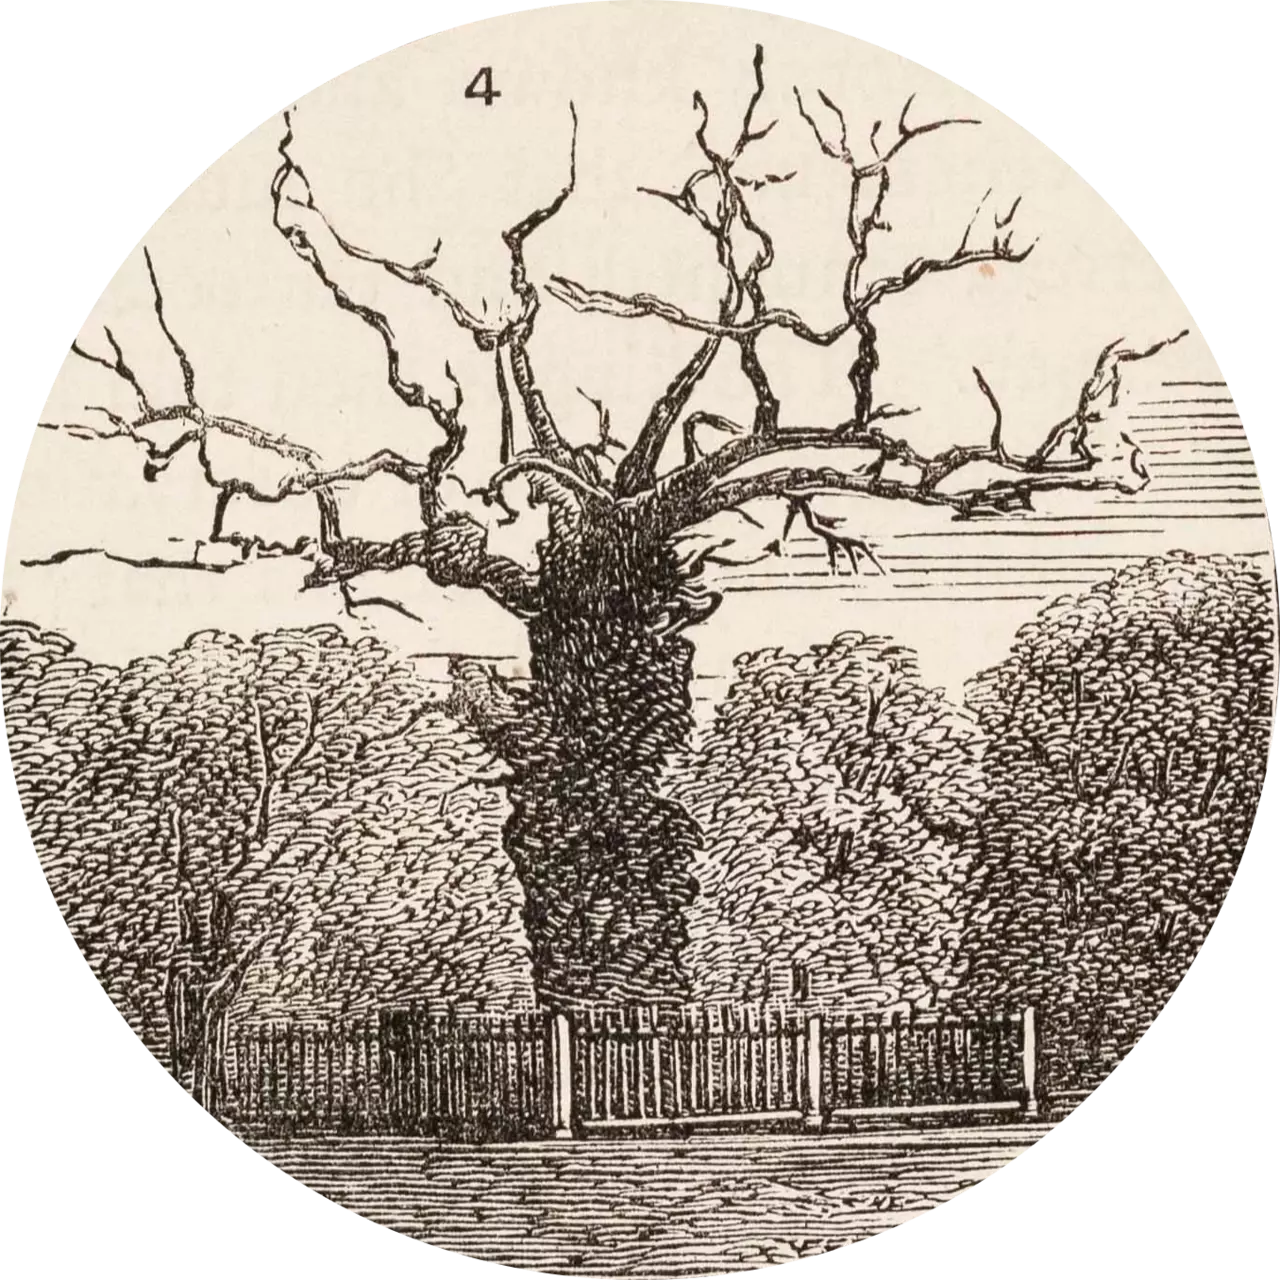 Queen Elizabeth's Oak depicted in an illustration from 1876